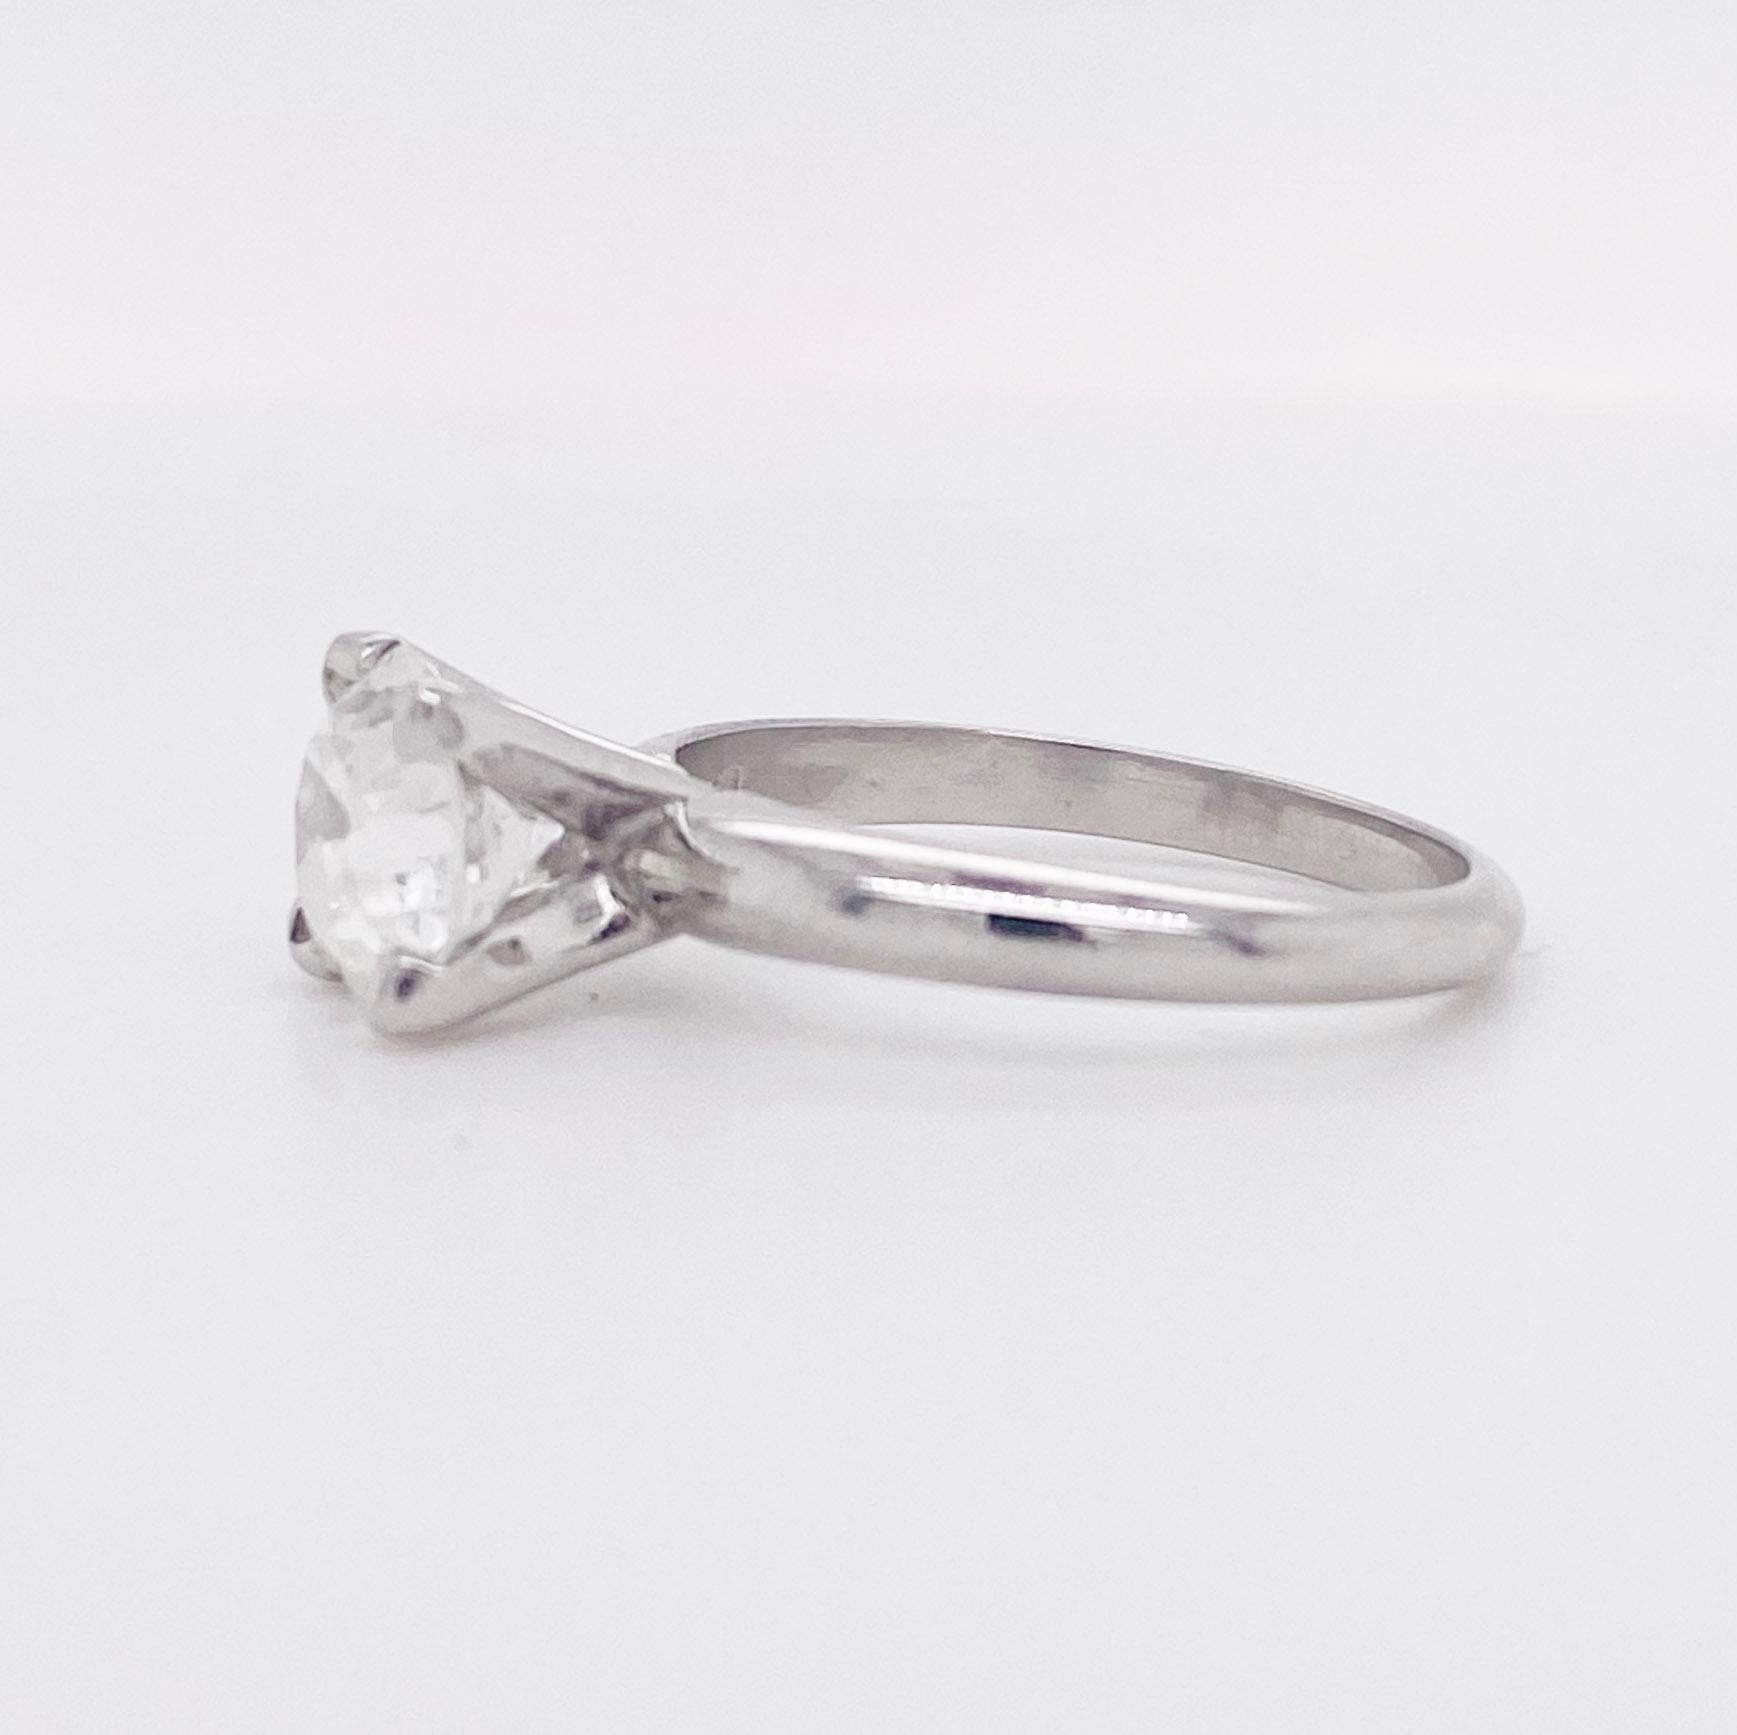 Für den Liebhaber von Vintage-Schmuck aus Nachlässen! Dieser Ring ist ein Erbstück mit einem alten Diamanten im europäischen Schliff in einer Solitärfassung aus Platin im Vintage-Stil. Die Zacken haben ein einzigartiges 